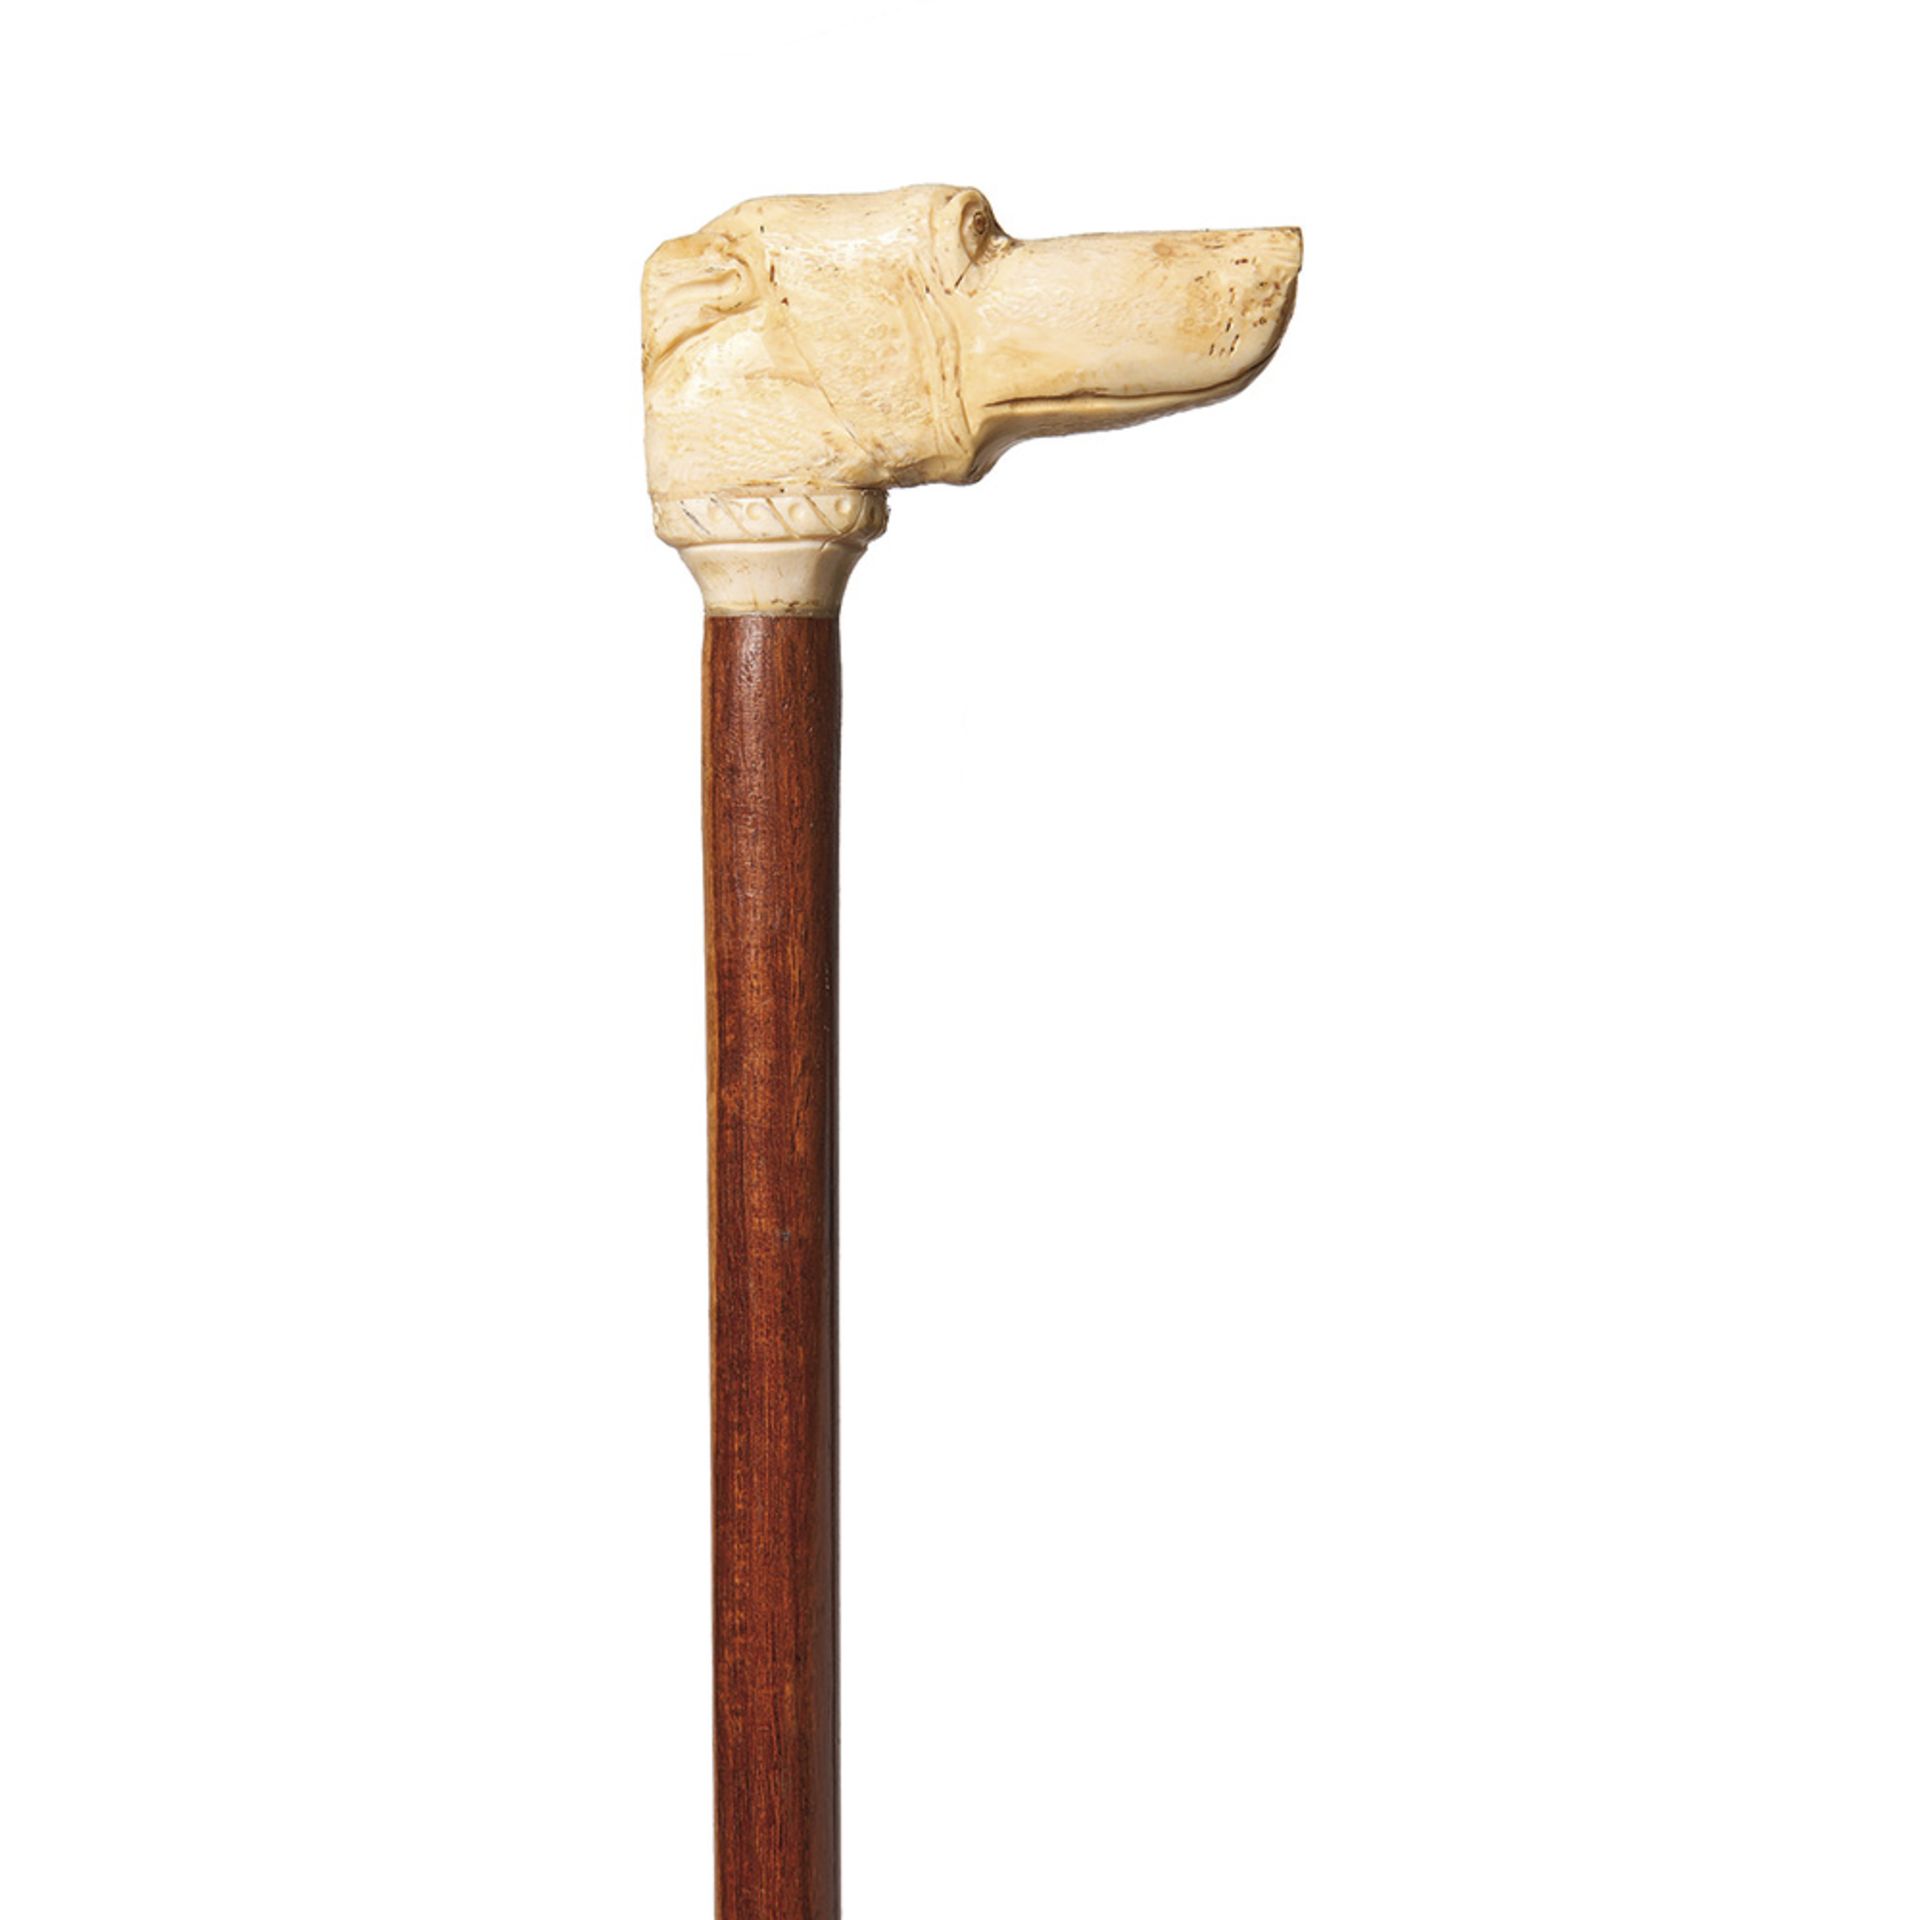 Bastón de paseo con empuñadura diseño cabeza canina en marfil tallado y vara en madera barnizada,